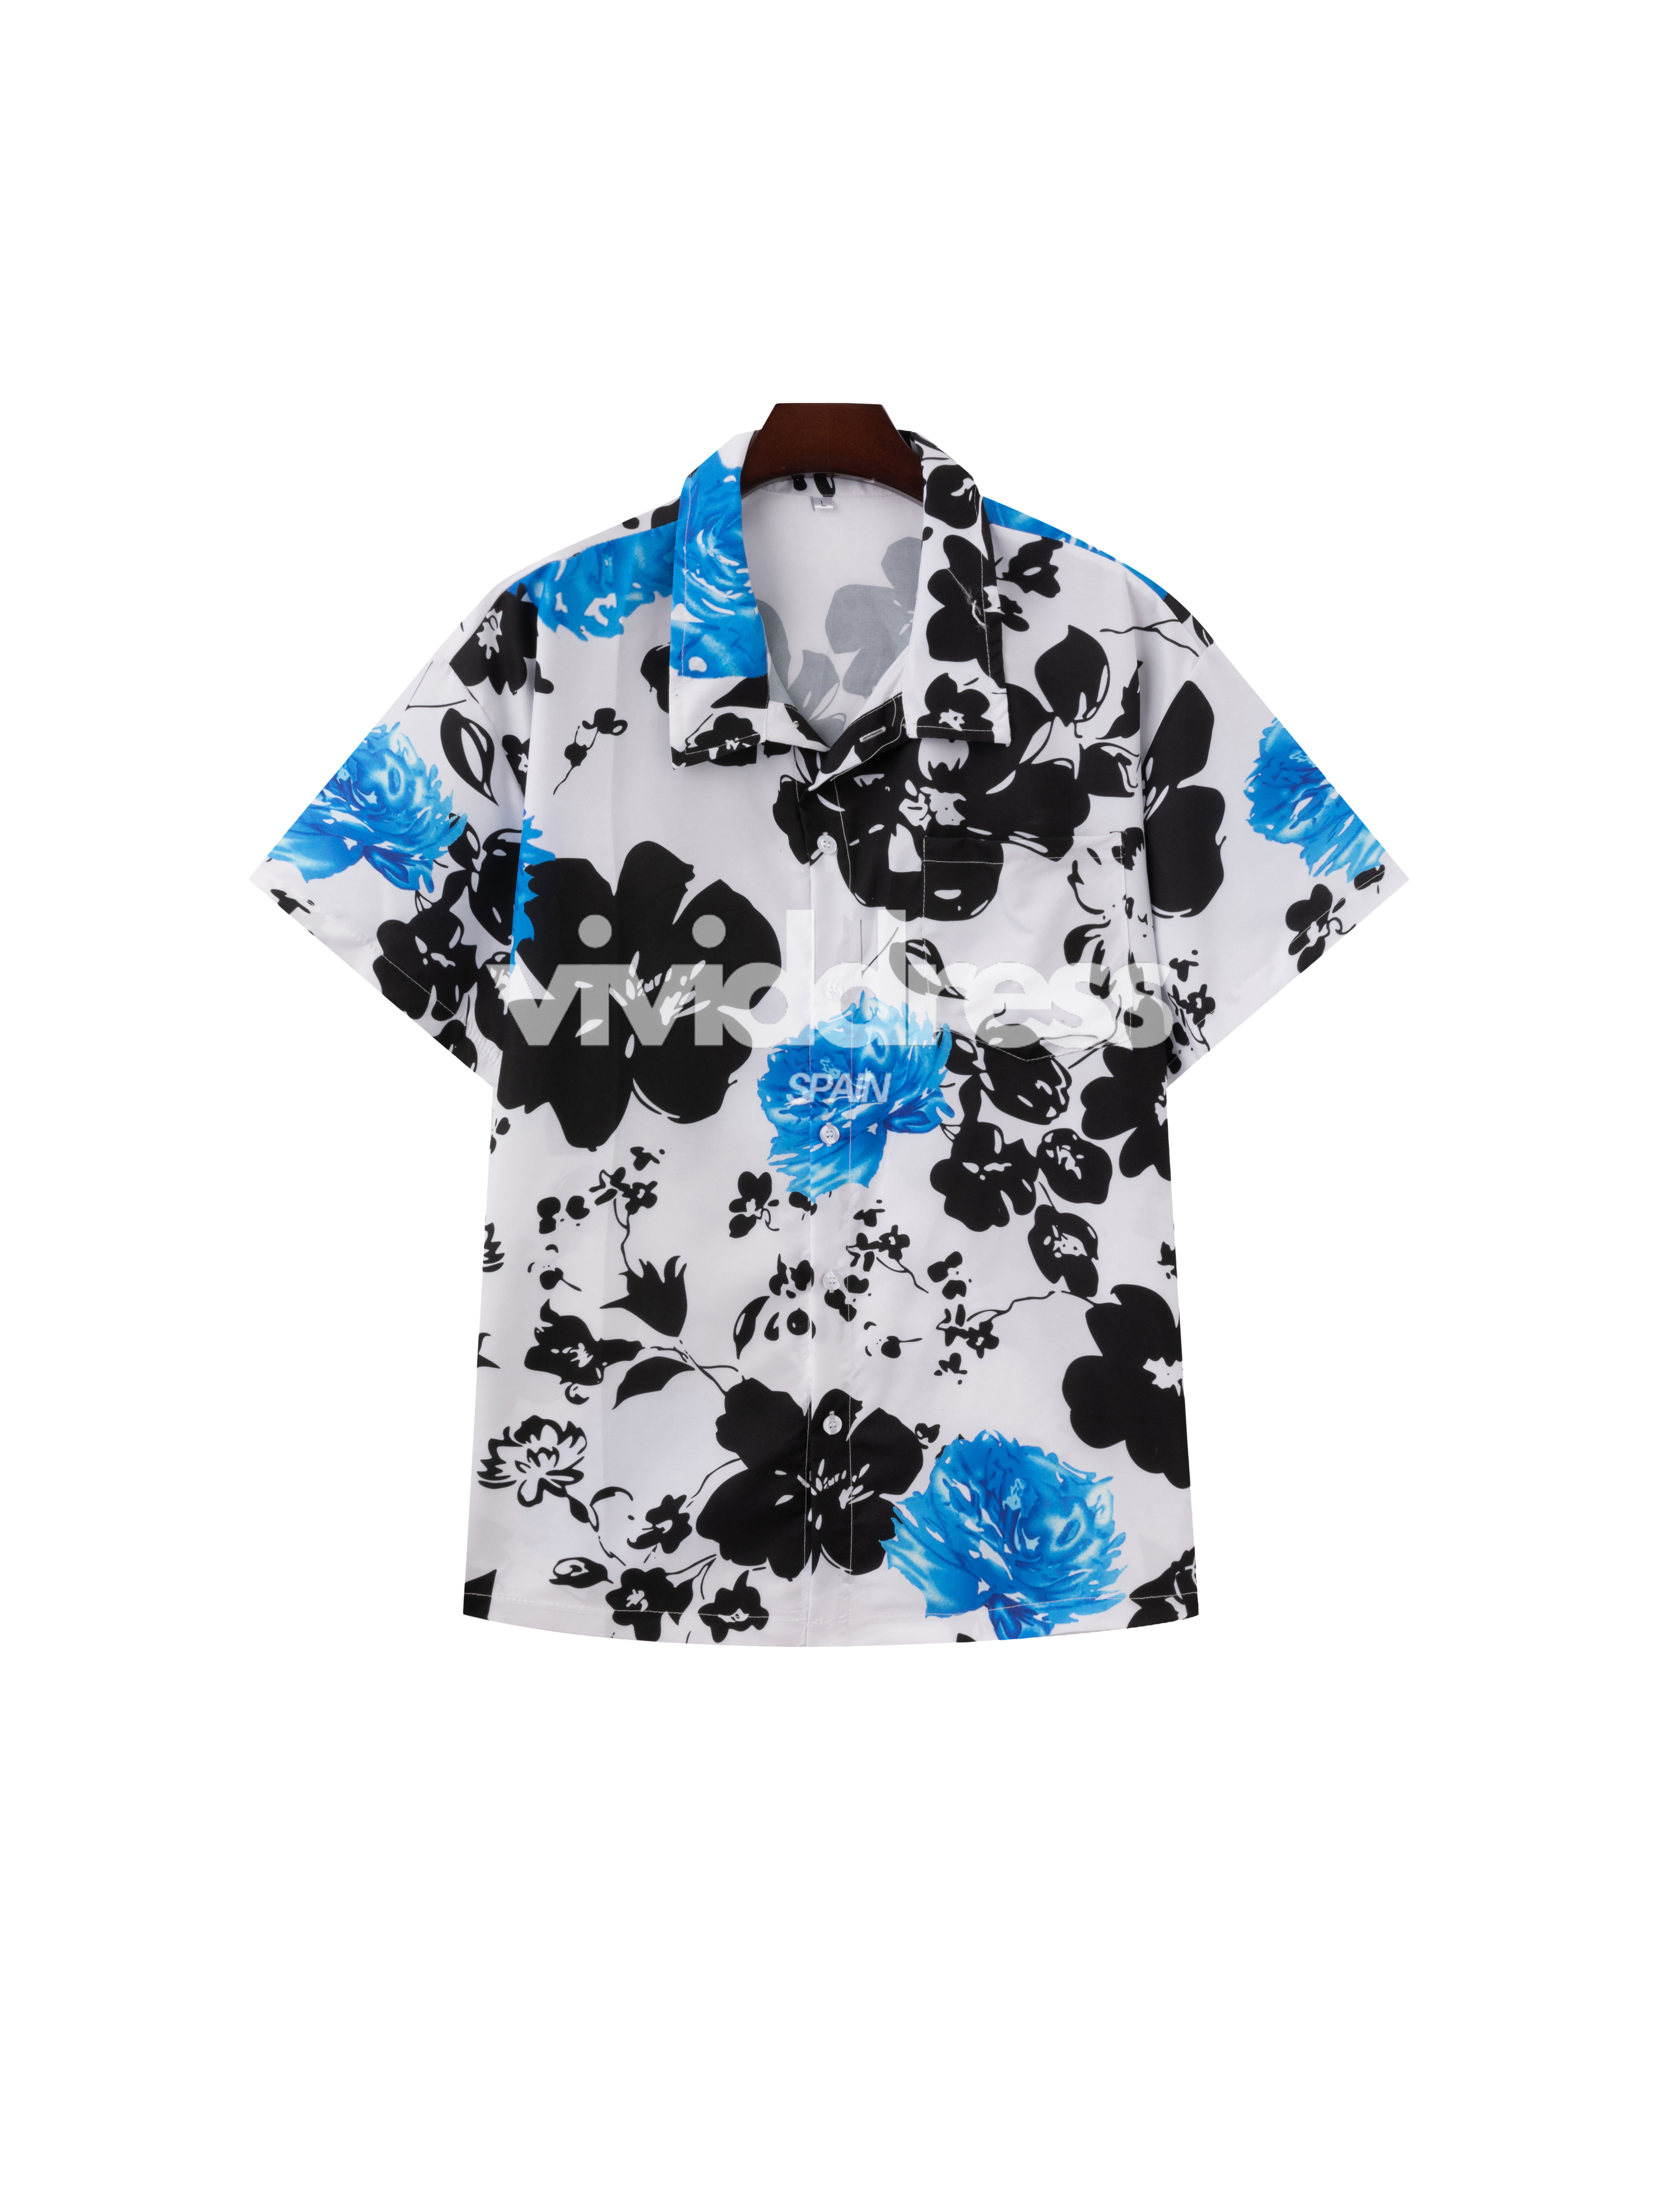 Men's Casual Blue Flower Print Beach Summer Holiday Short Sleeve Shirt